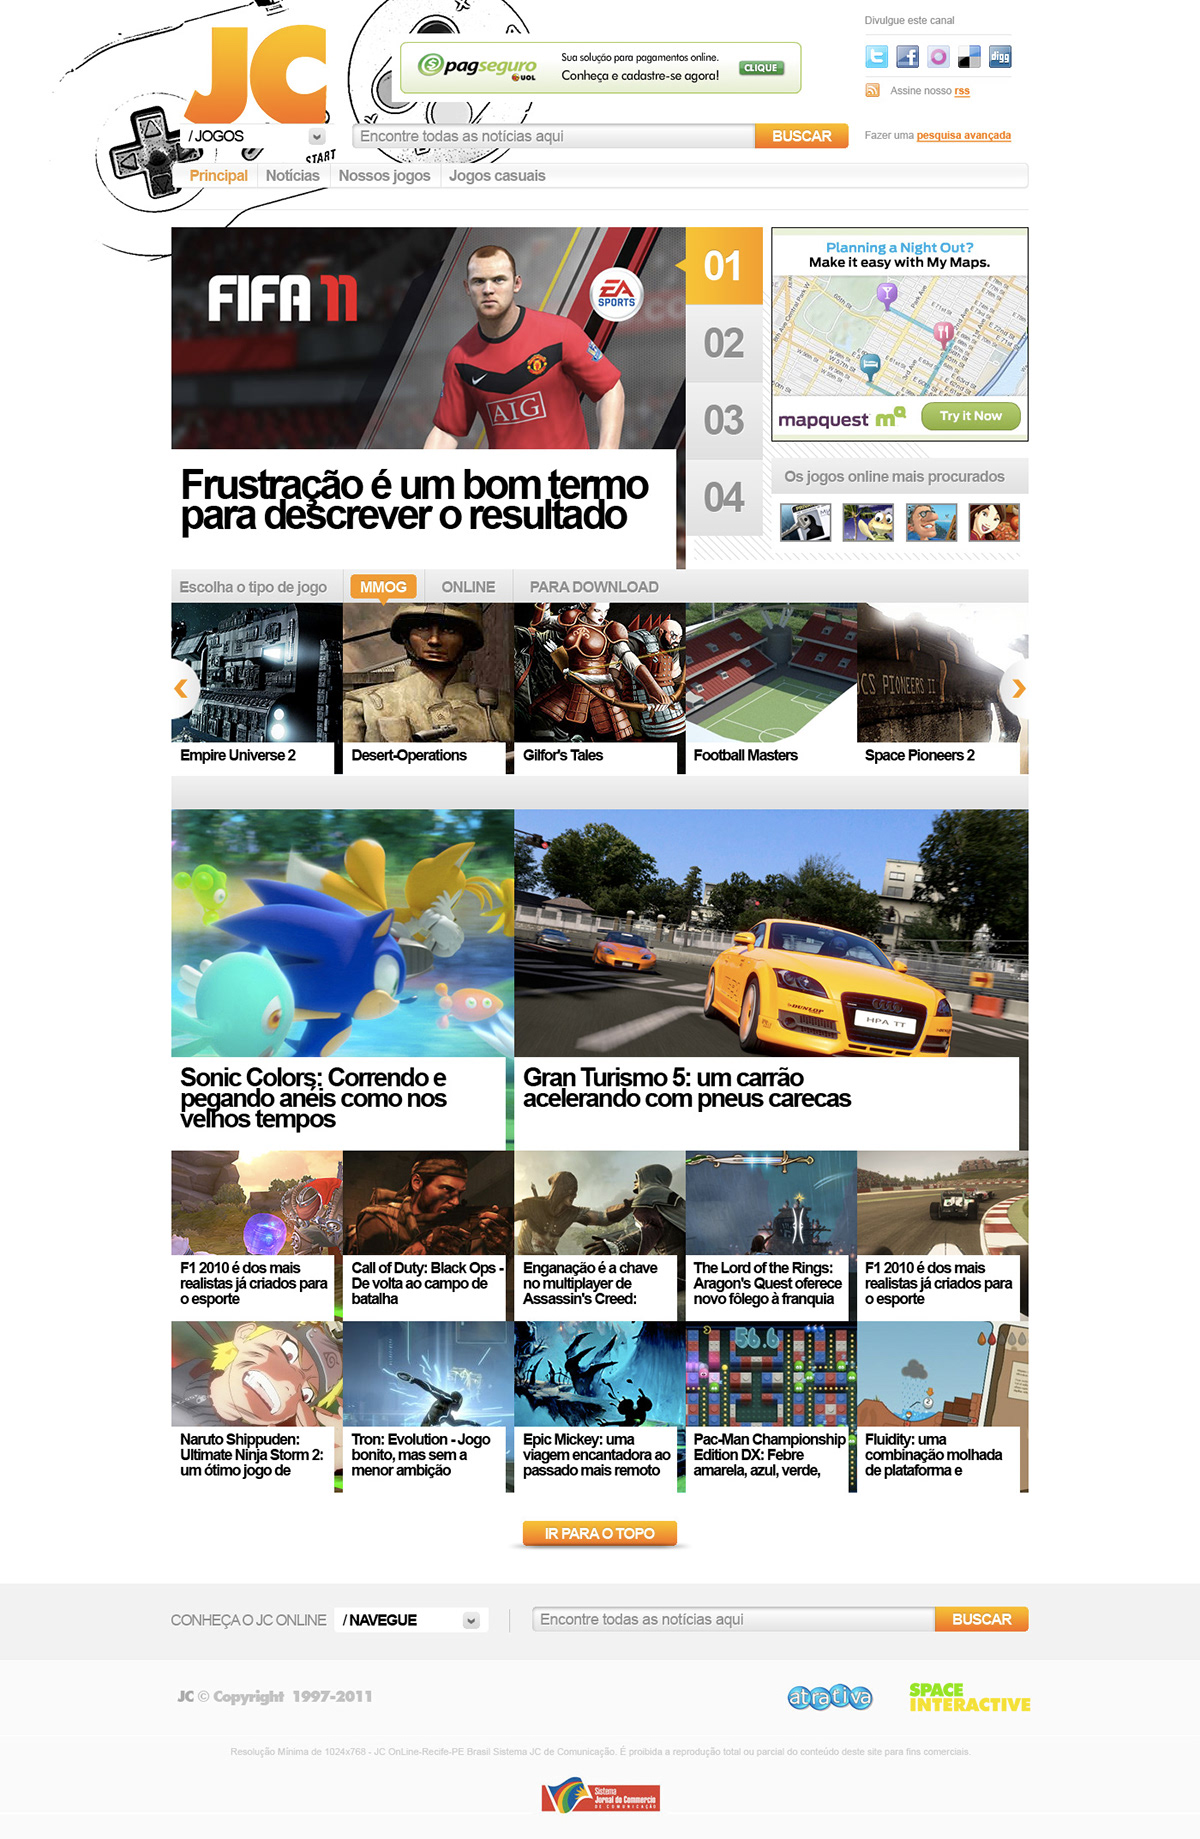 ux UI design Games magazine portal